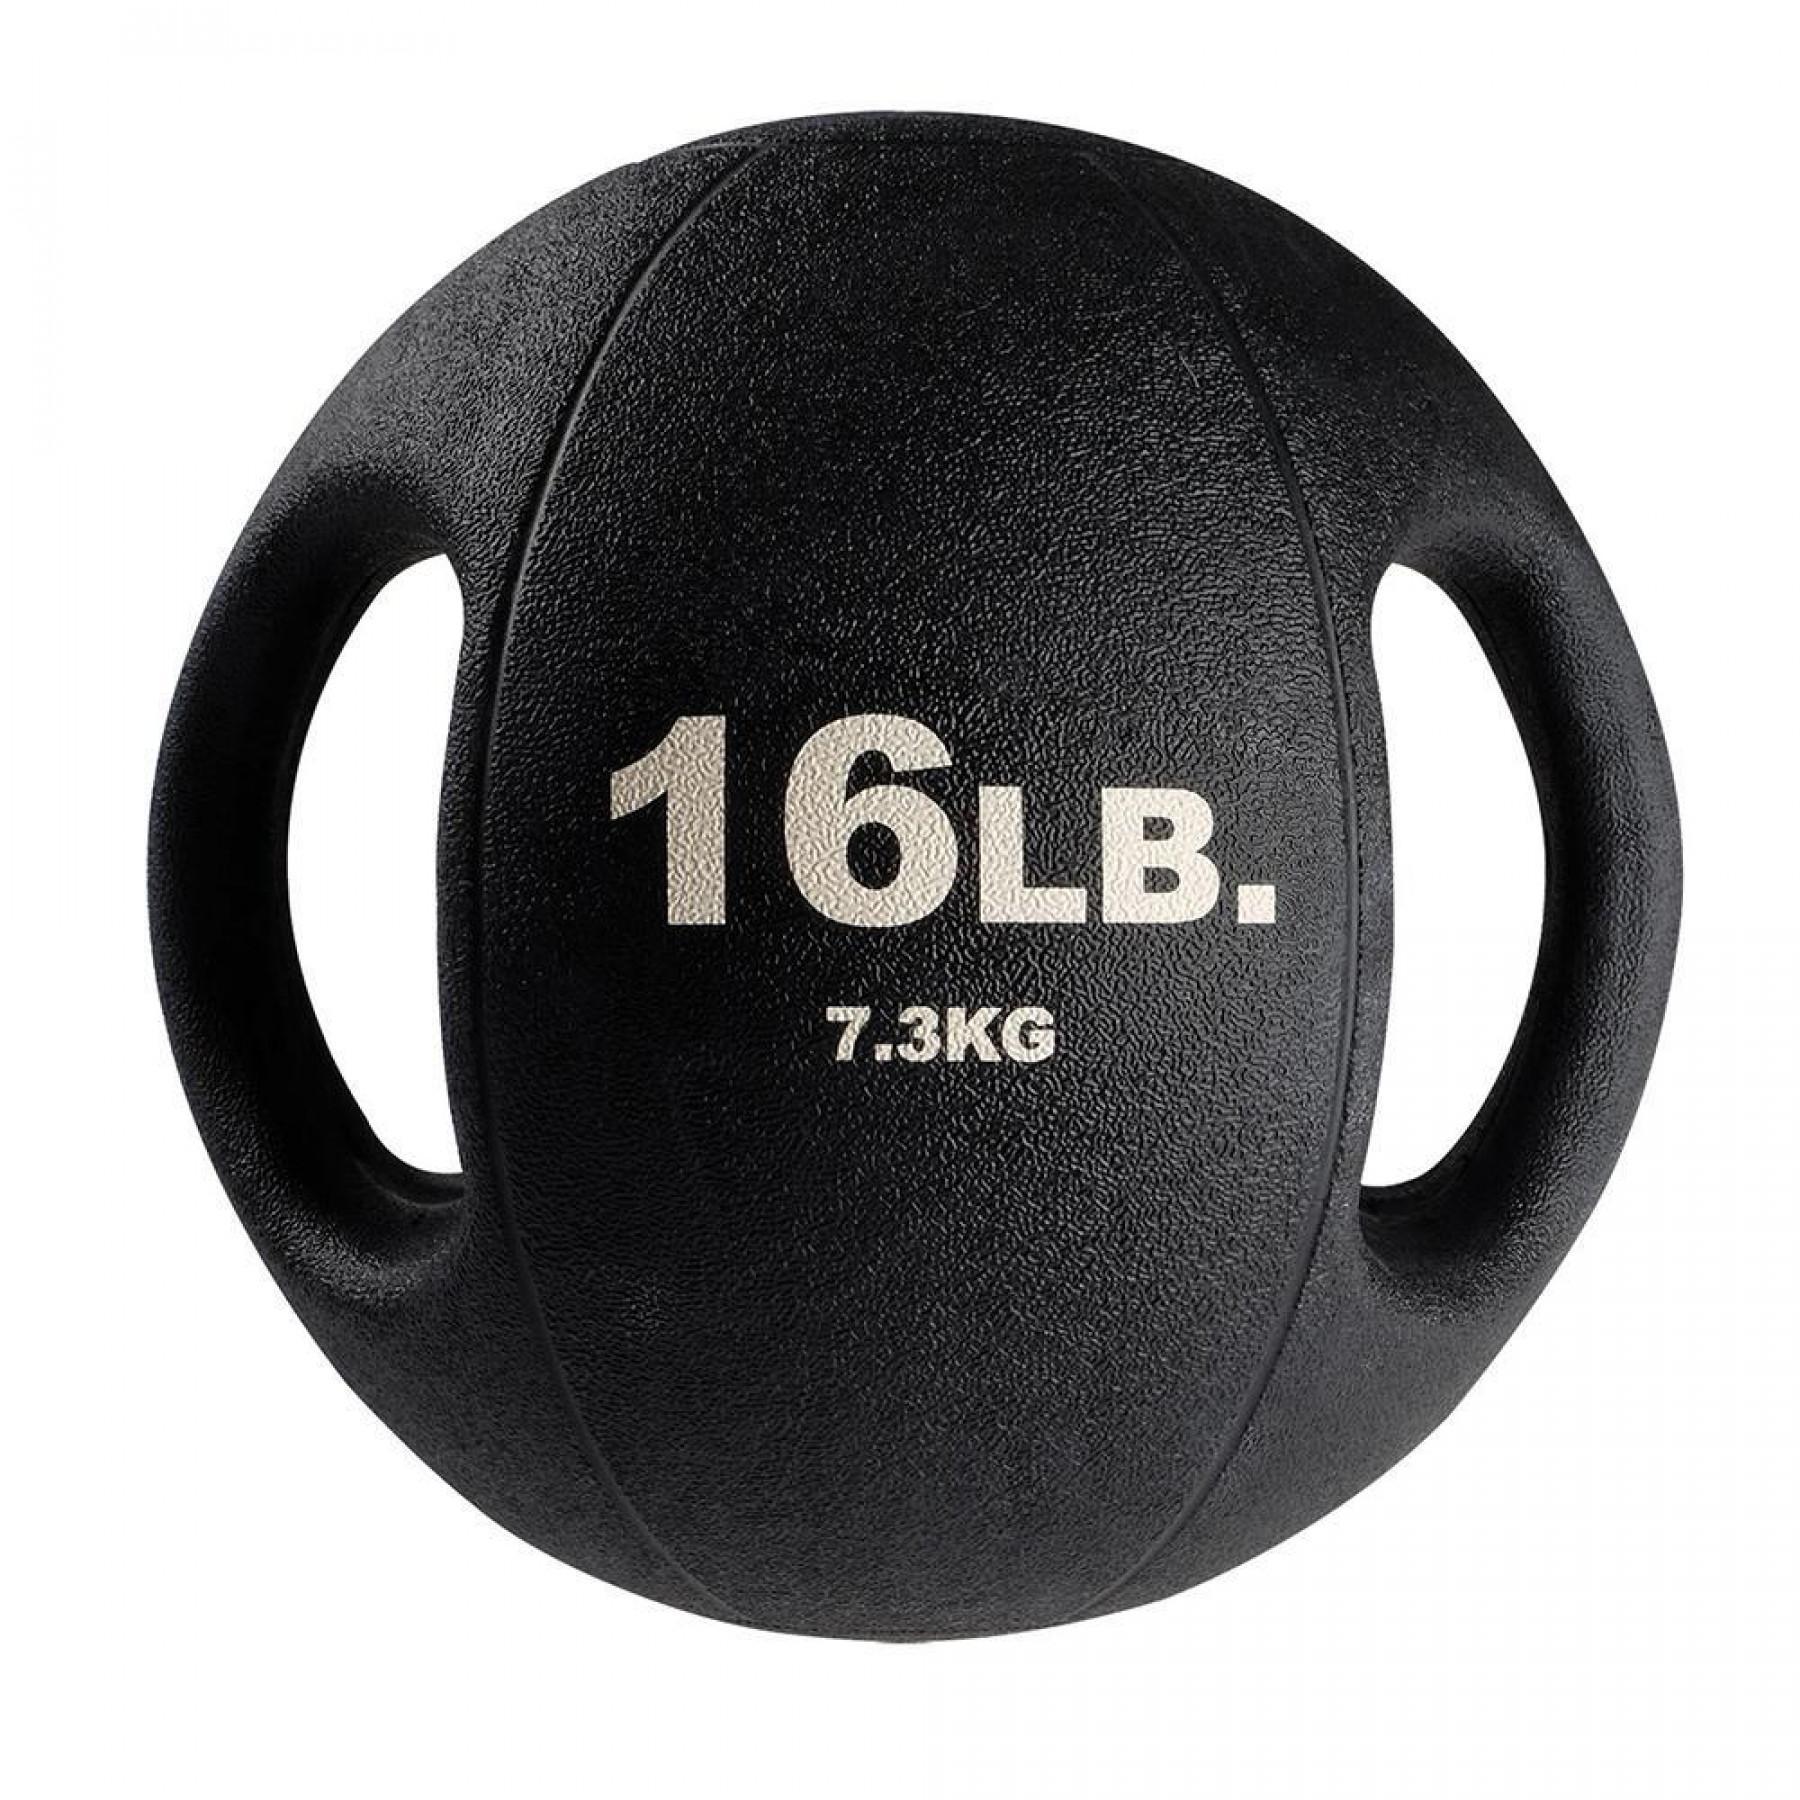 Medizinball 2 Griffe 5,4 kg Body Solid